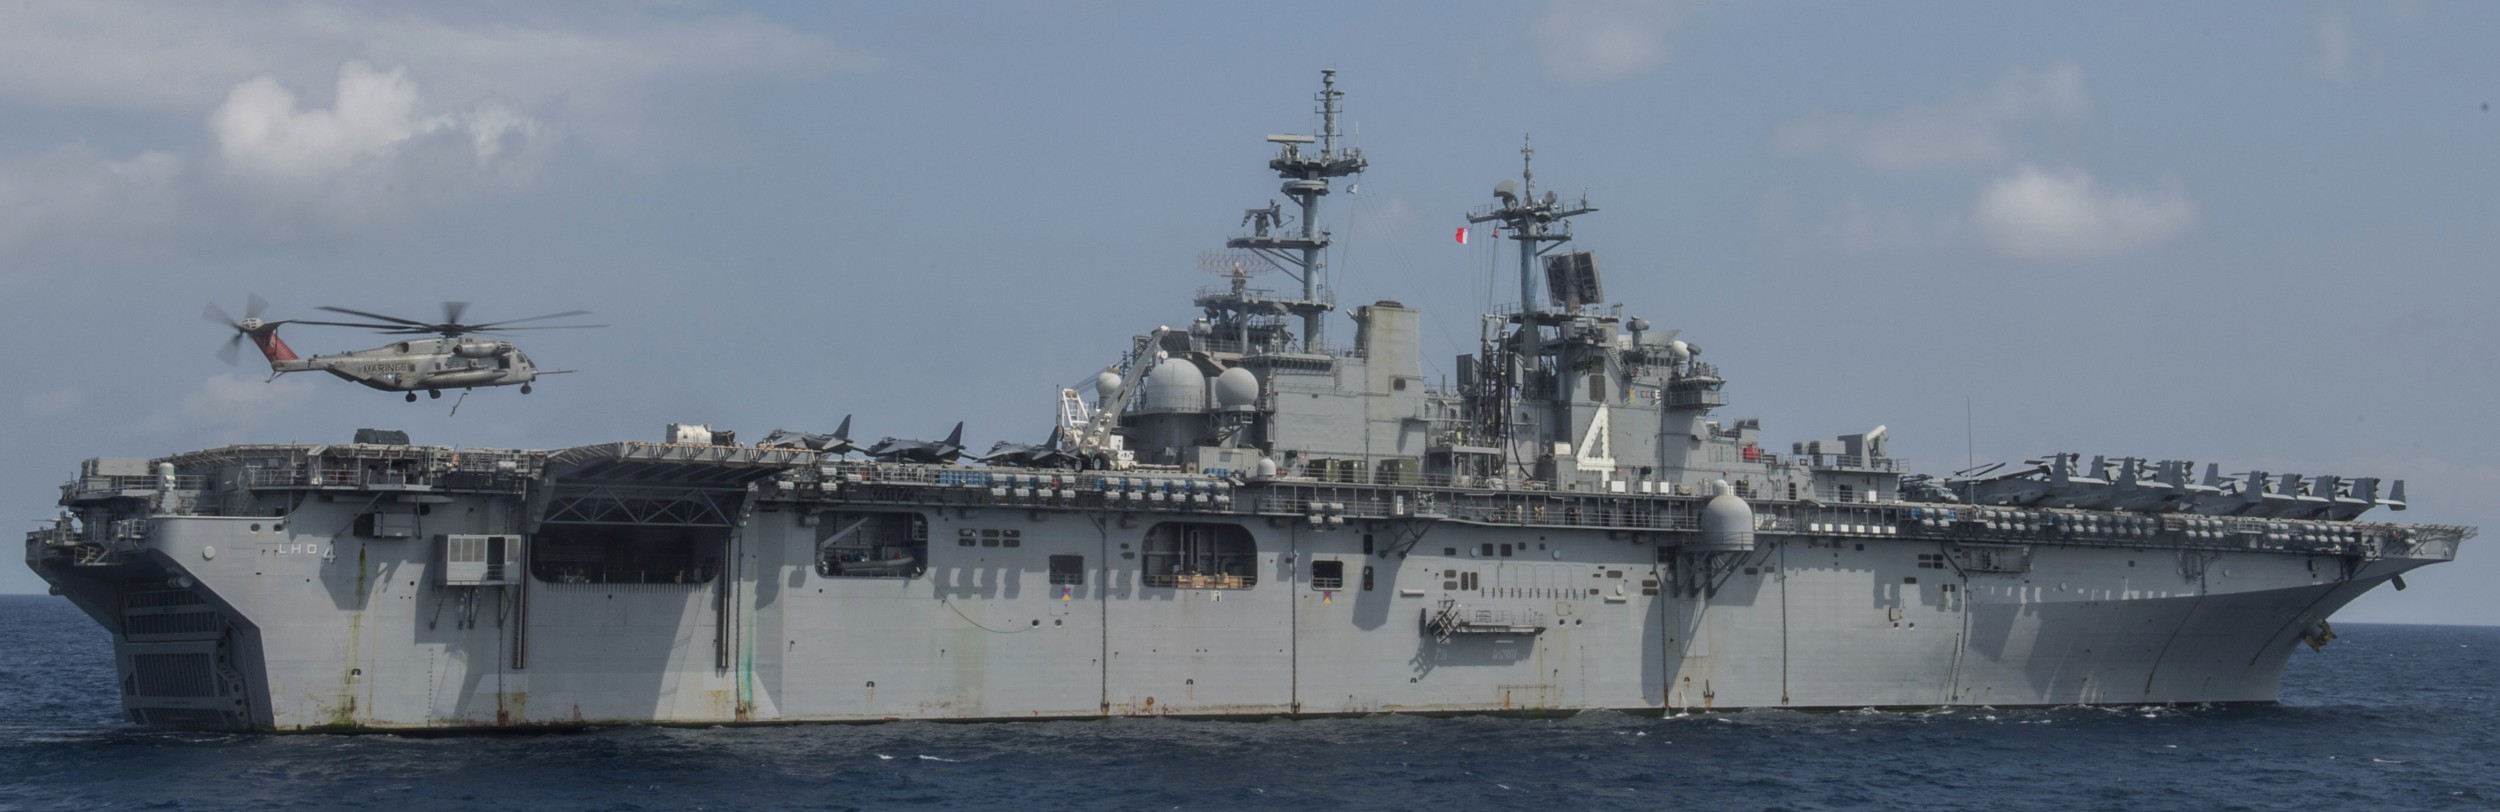 lhd-4 uss boxer wasp class amphibious assault ship dock landing us navy marines vmm-166 persian gulf 87